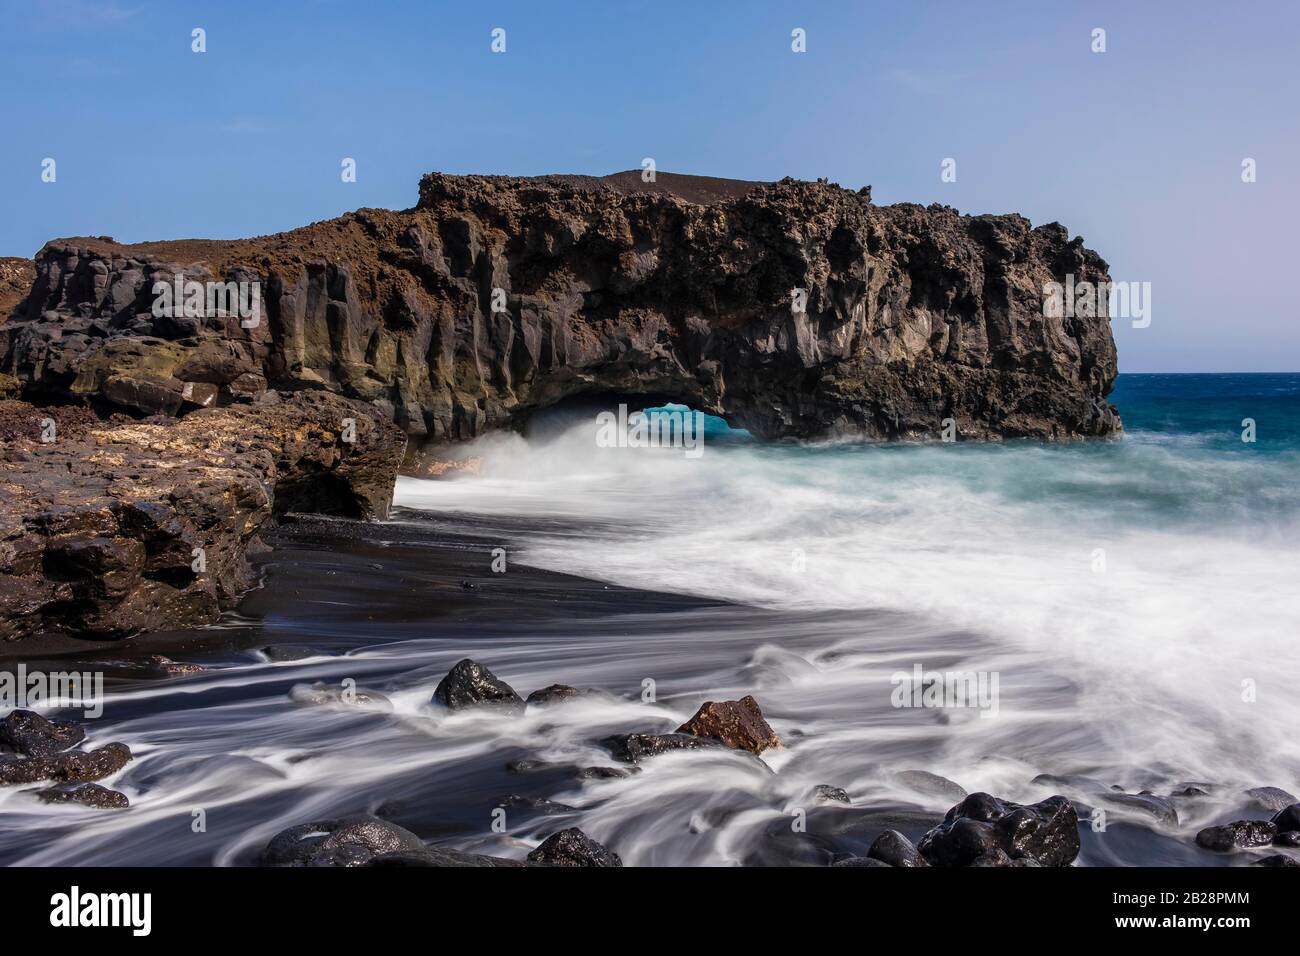 Surf und Wellen, Wasser fließt nach einer großen Welle zwischen Steinen zurück zum Atlantik, Südküste, La Palma, Kanarische Inseln, Kanarische Inseln, Spanien Stockfoto